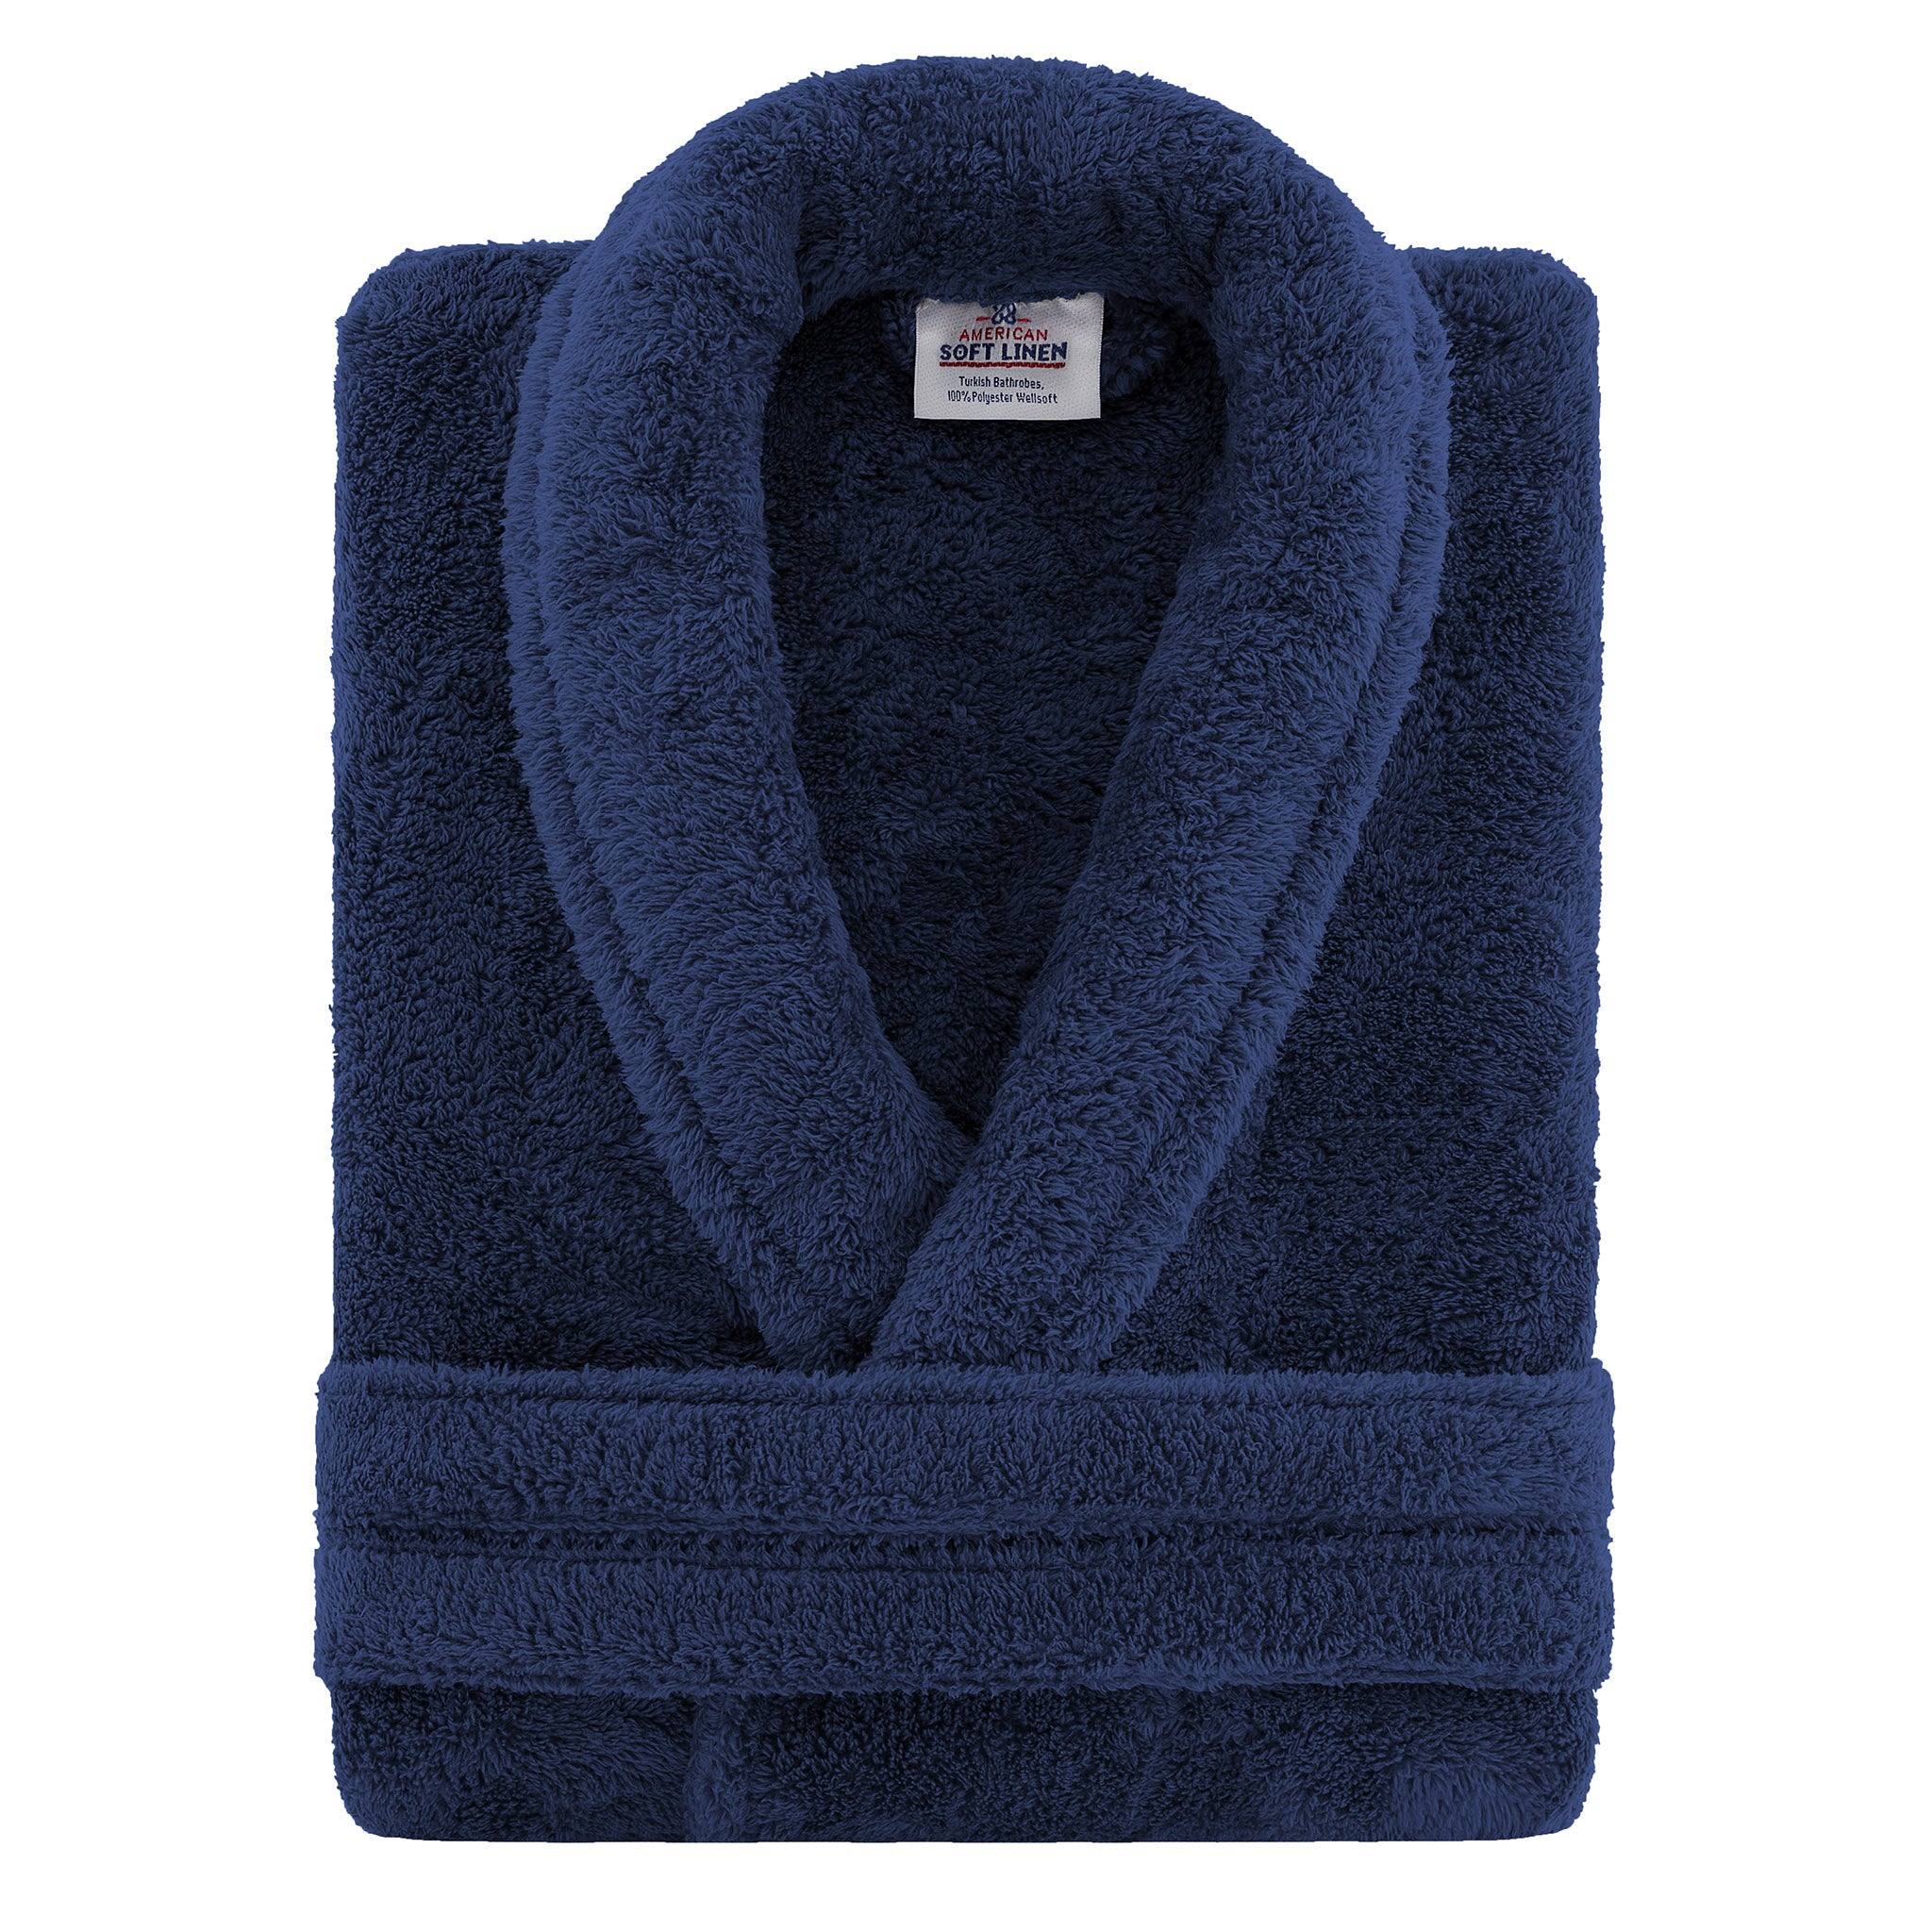 American Soft Linen Super Soft, Absorbent and Fluffy, Unisex Fleece Bathrobe S-M-navy-blue-3